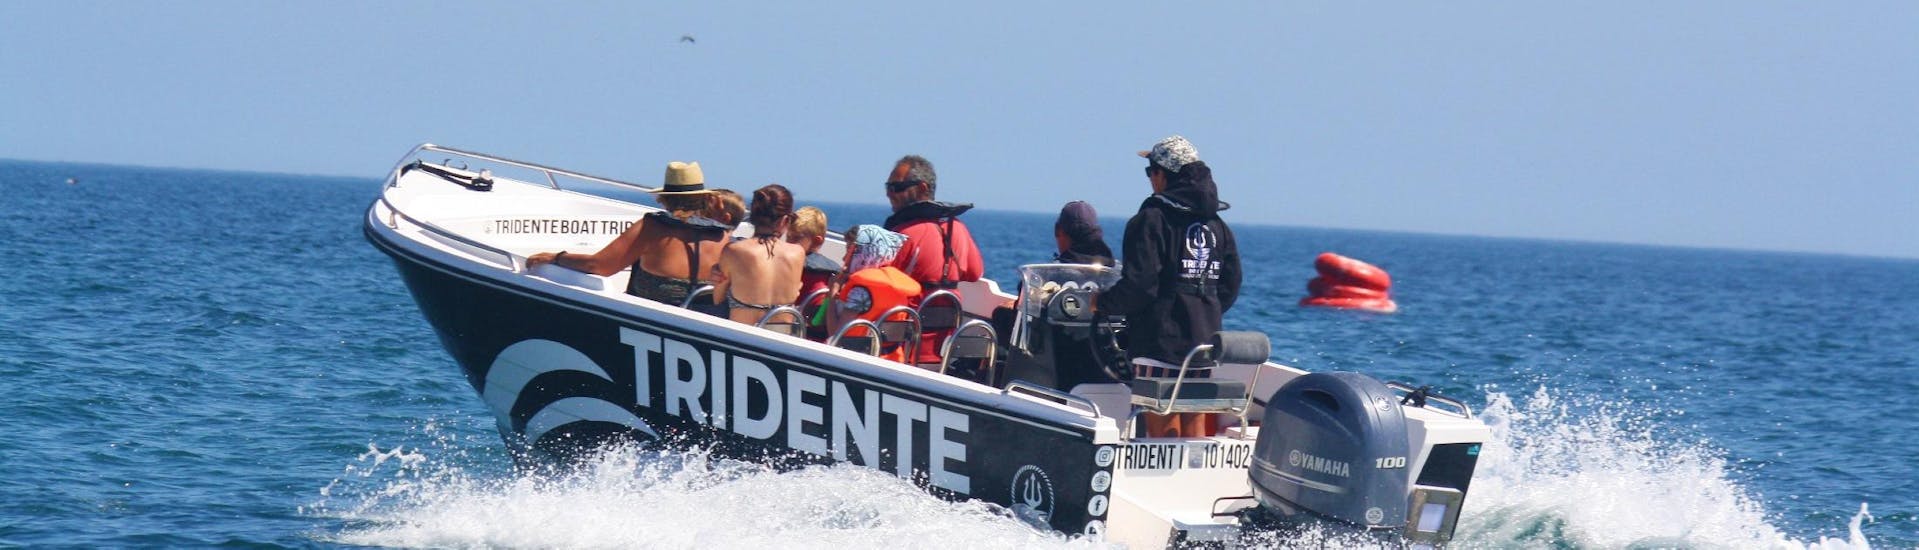 In una gita in barca alla grotta di Benagil da Armação De Pêra con Tridente Boat Trips Algarve, i passeggeri si godono il viaggio lungo la costa dell'Algarve in compagnia del loro capitano esperto.